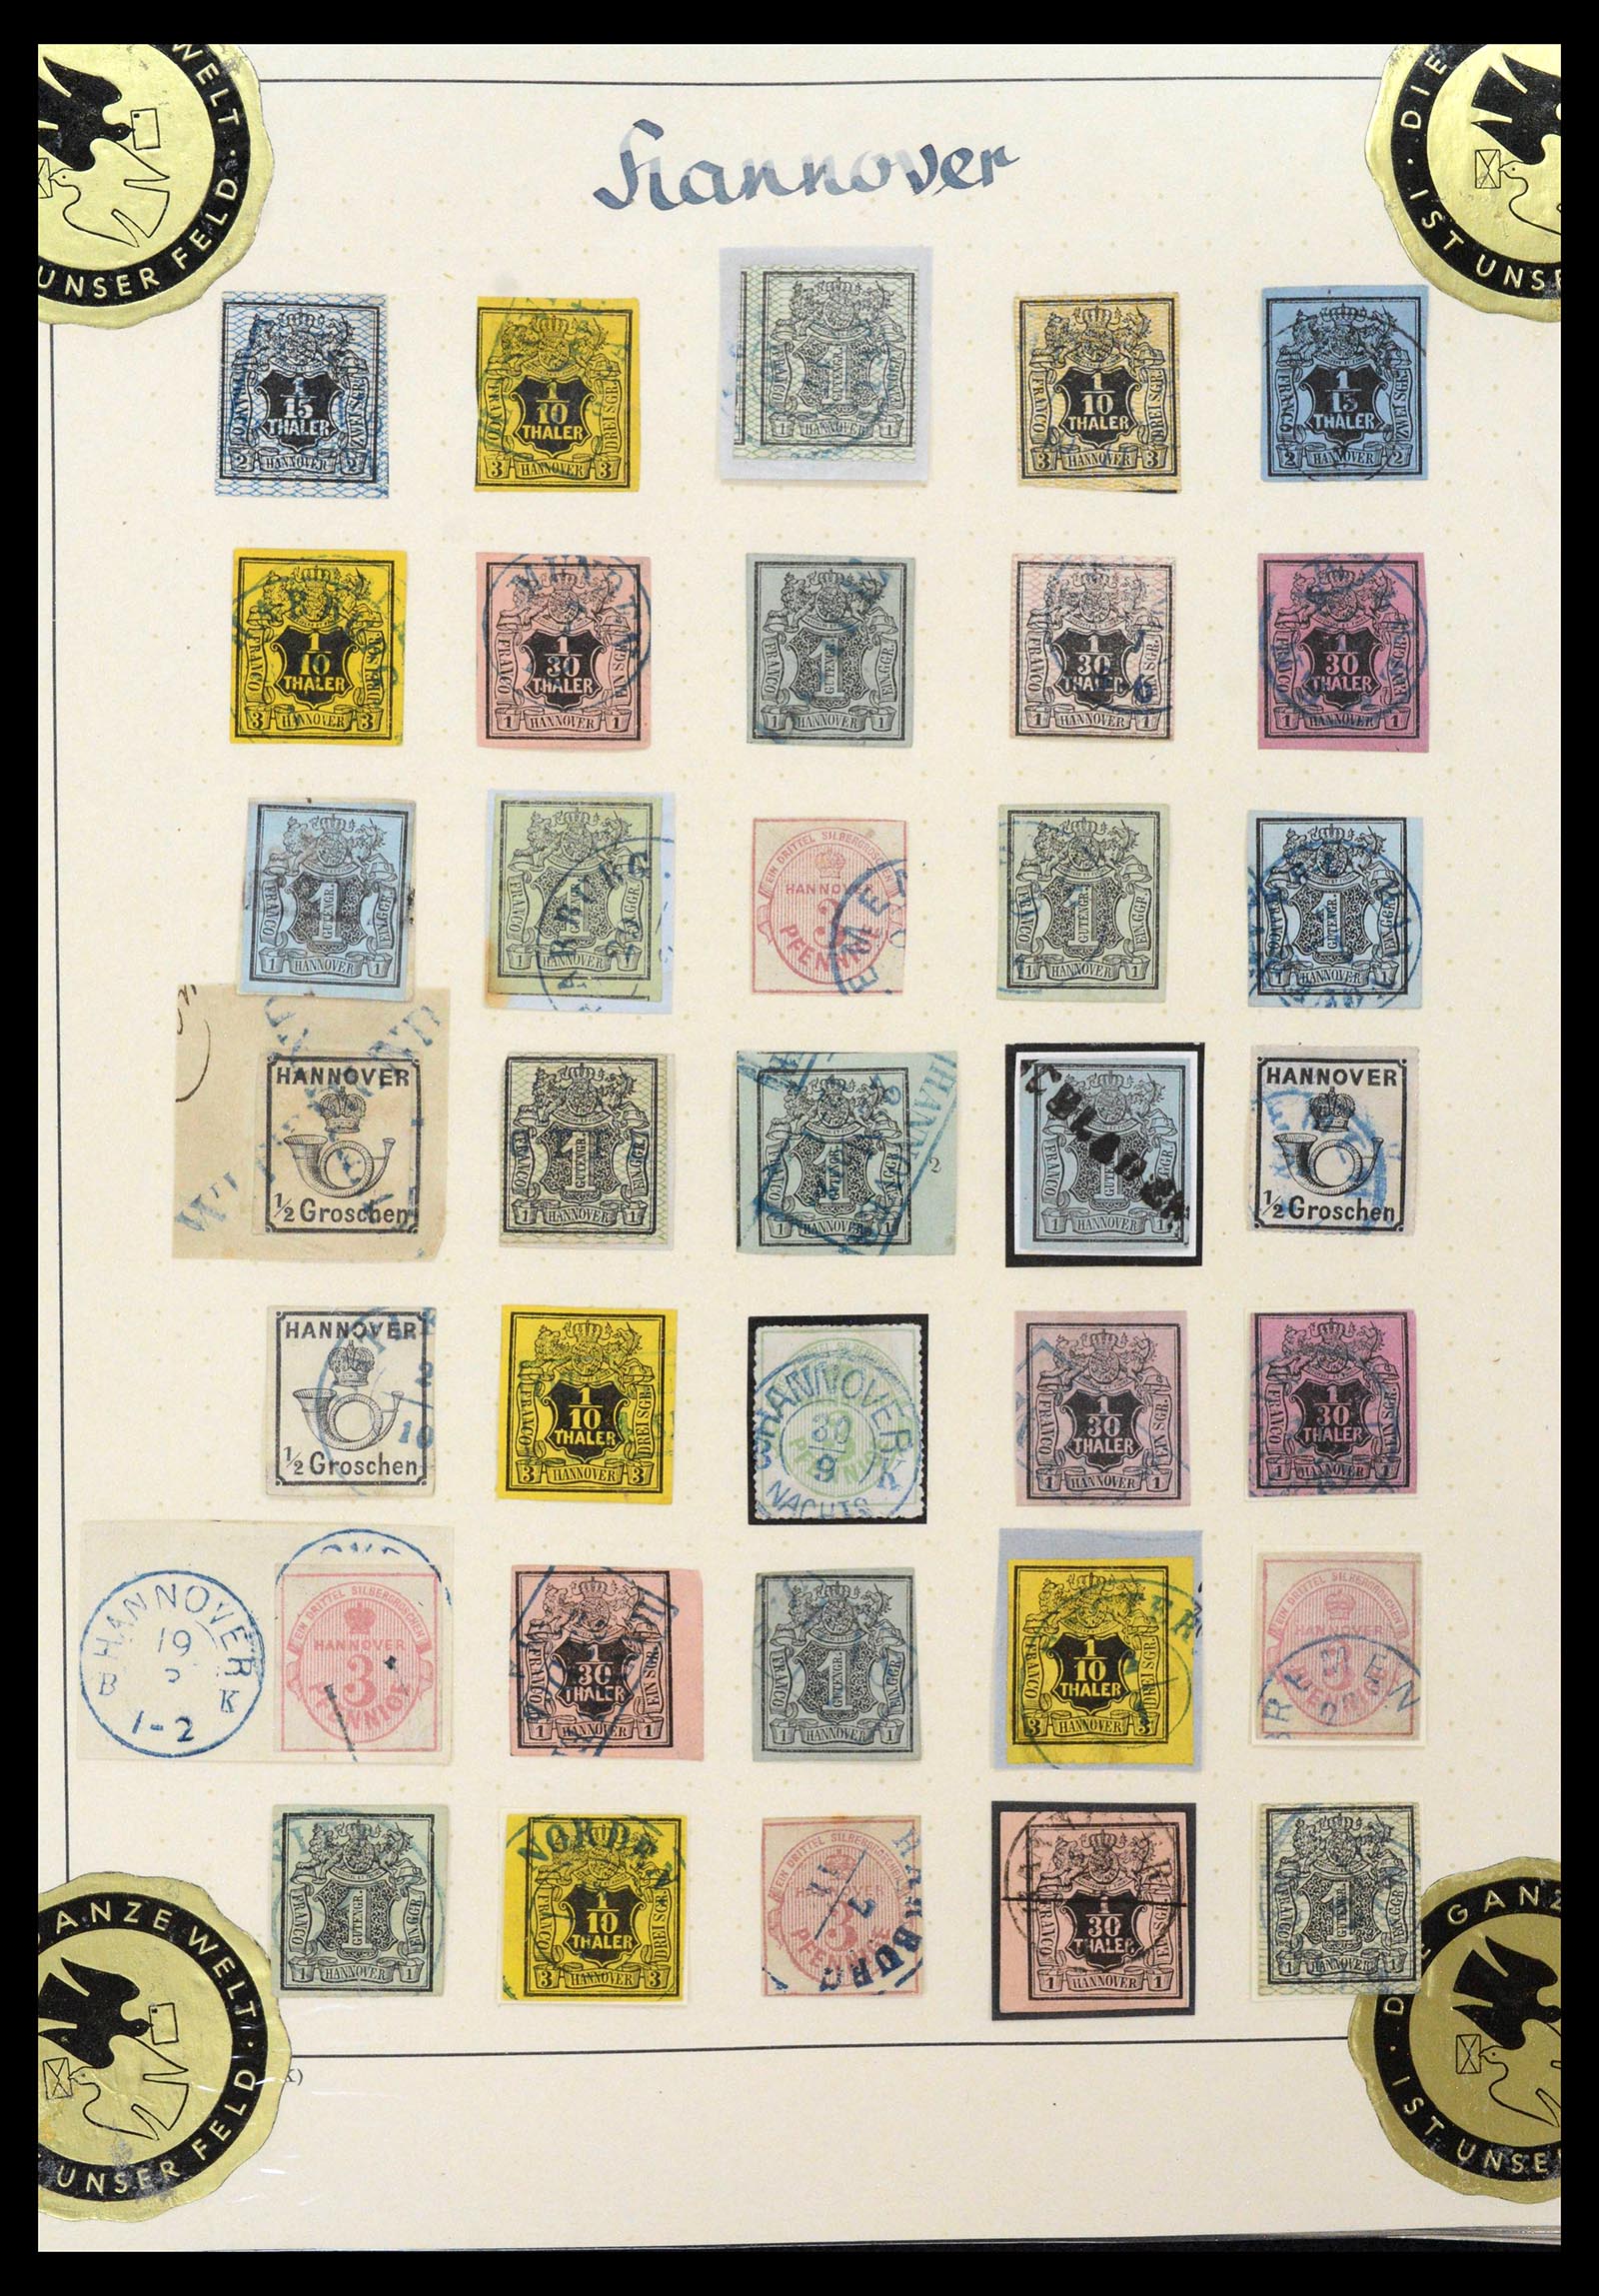 39200 0005 - Postzegelverzameling 39200 Hannover SUPER verzameling 1850-1864.